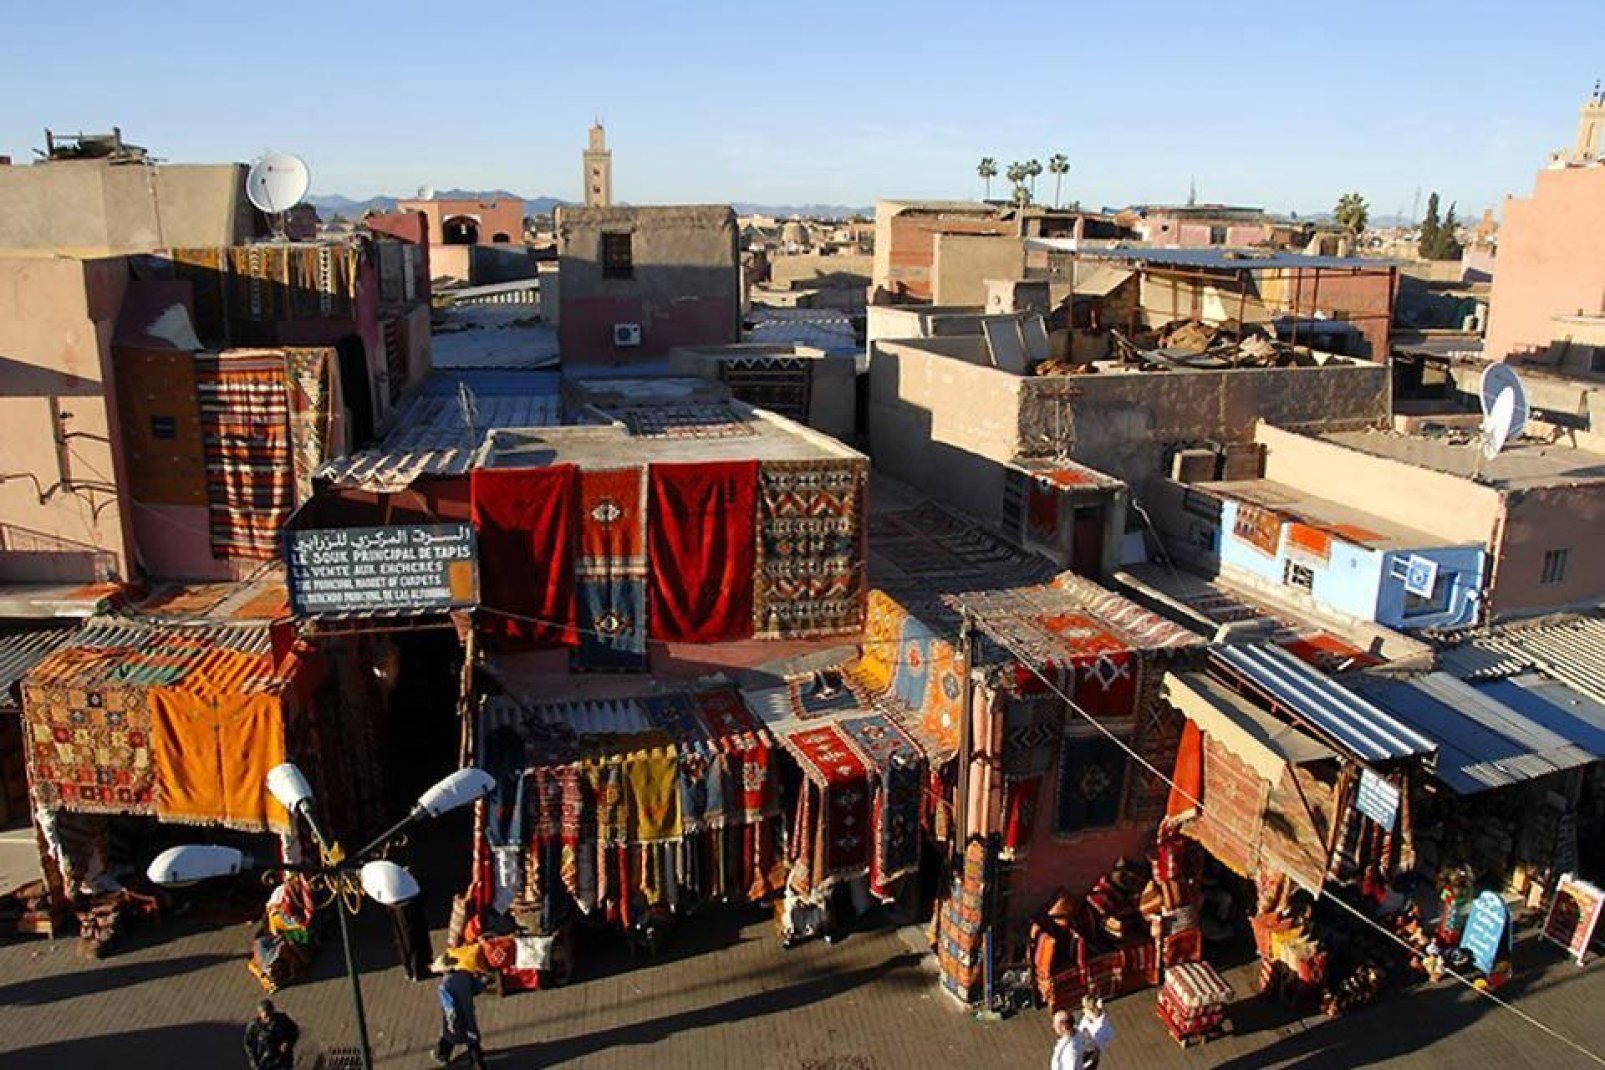 Cosa sarebbe Marrakech senza i vivaci e variopinti suk che vendono tessuti pregiati?